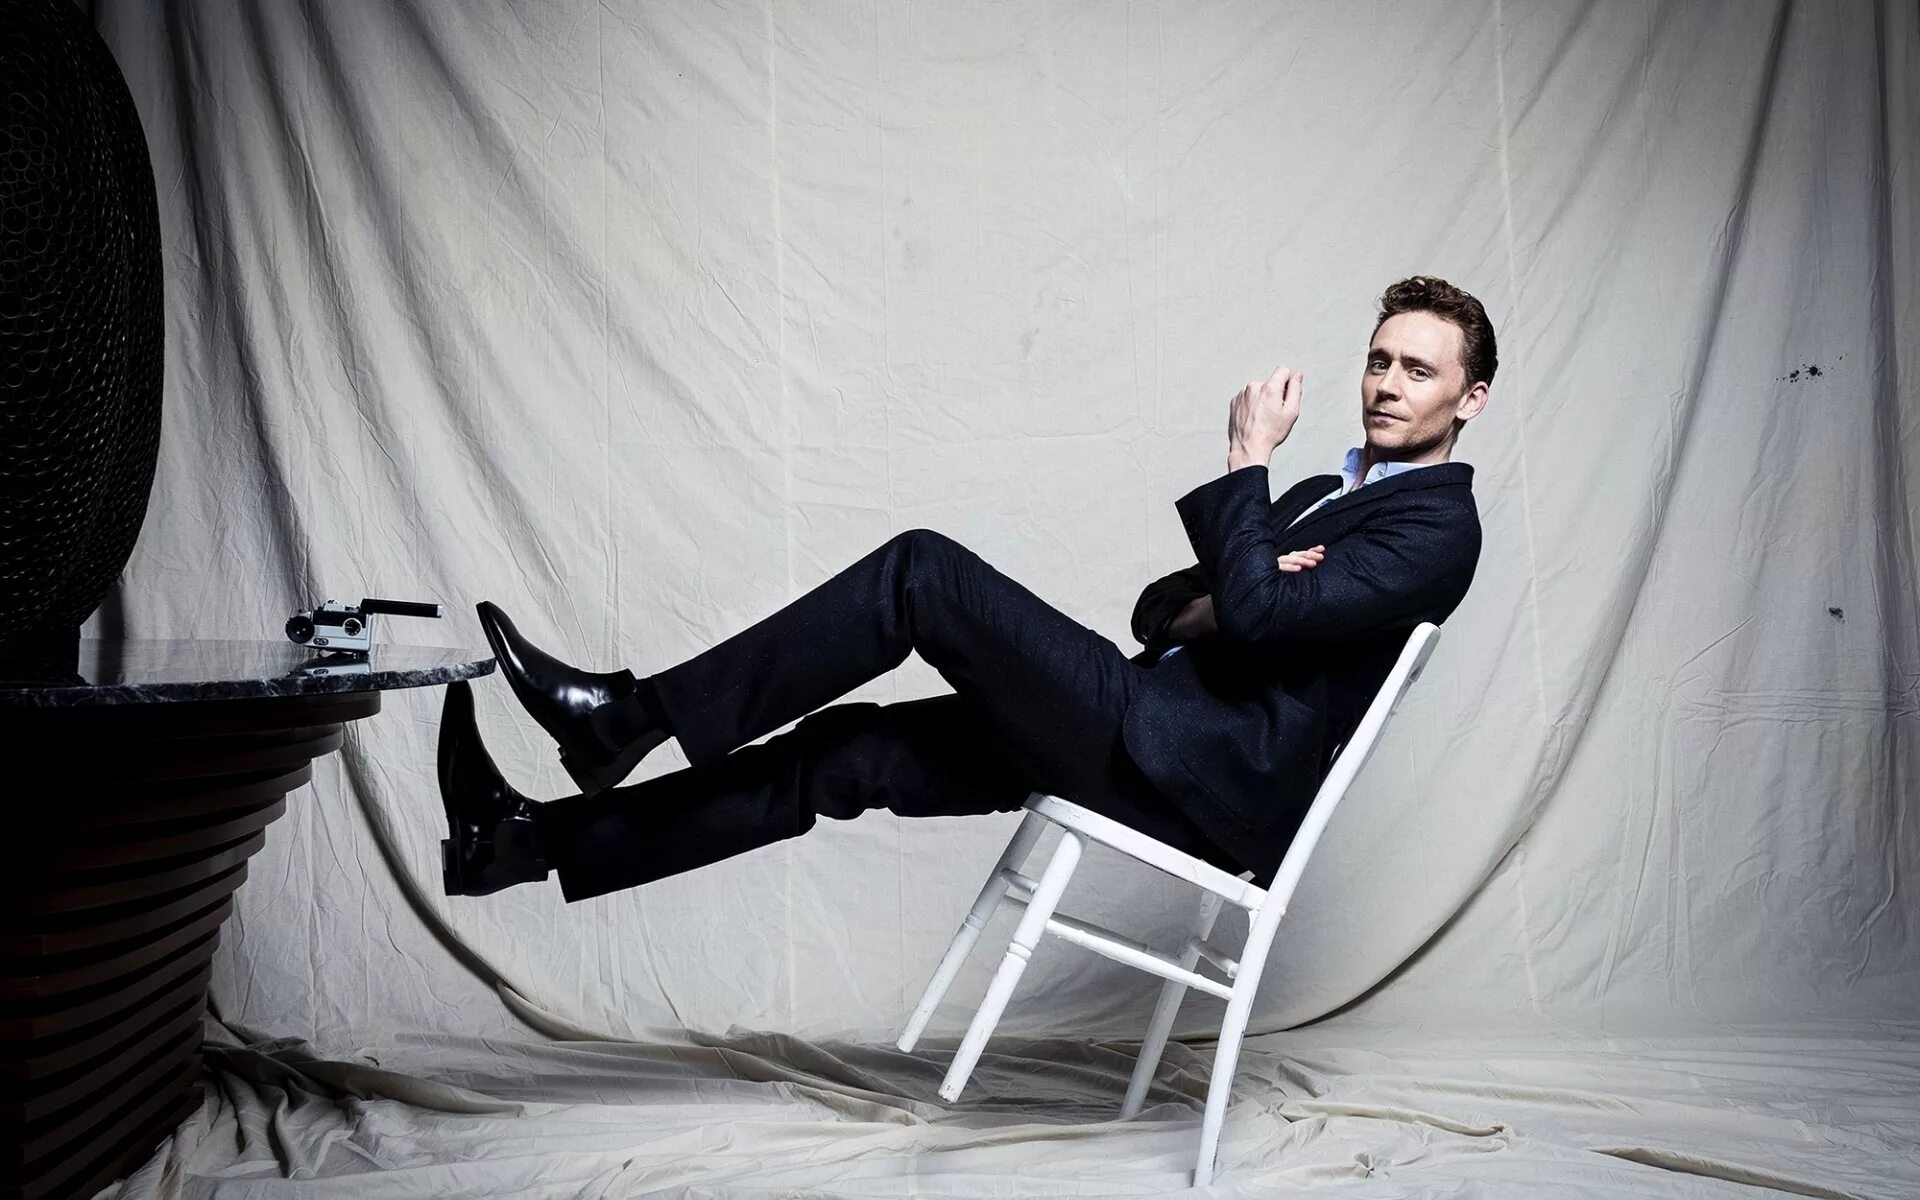 Sit tom. Том Хиддлстон. Том Хиддлстон фотосессии. Tom Hiddleston фотосессия. Том Хиддлстон сидит.